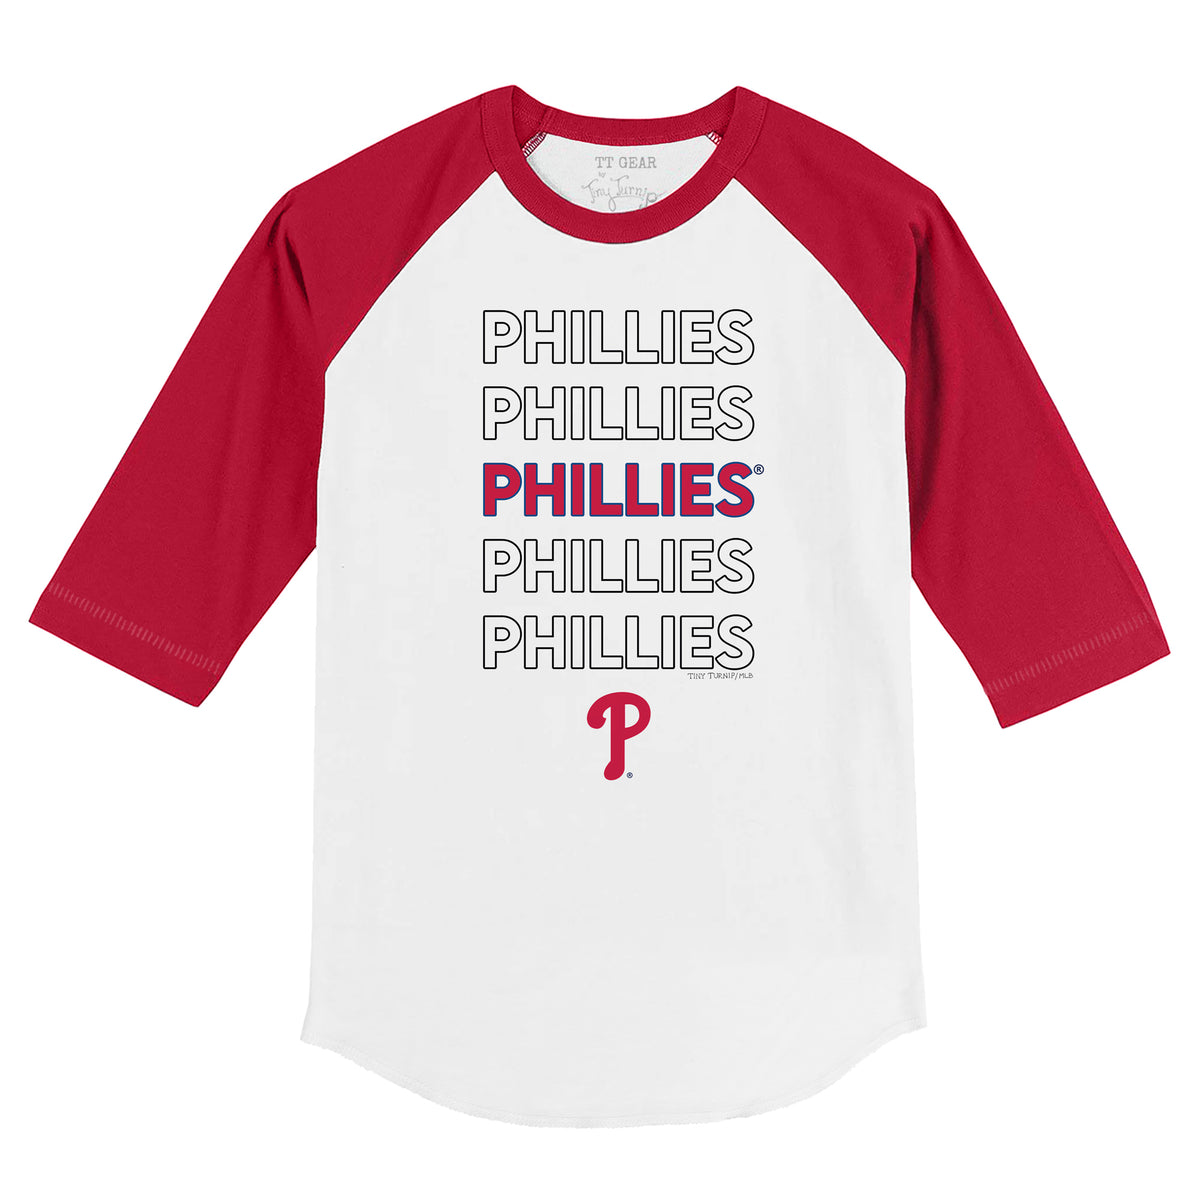 Mlb Philadelphia Phillies Men's Short Sleeve V-neck Jersey : Target